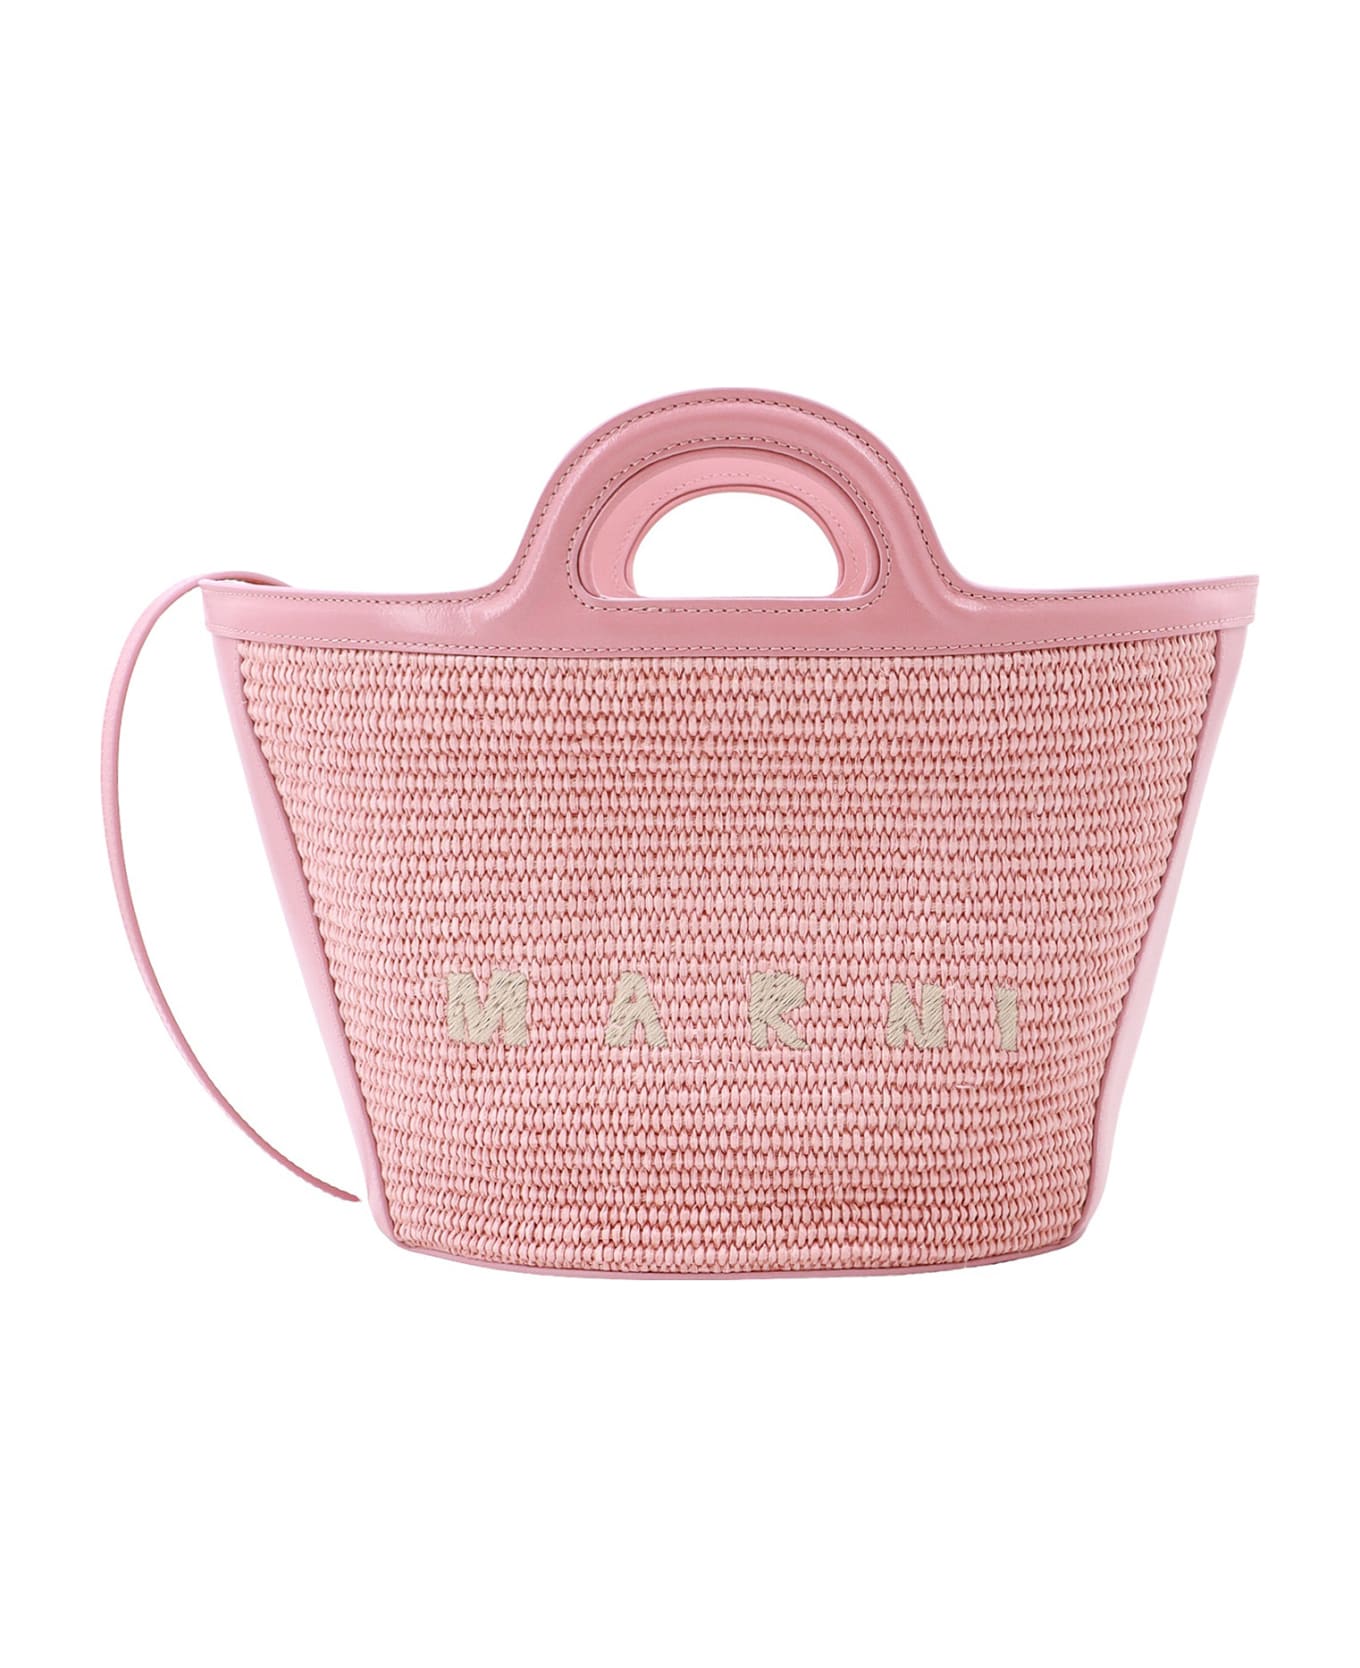 Marni Tropicalia Handbag - Pink トートバッグ